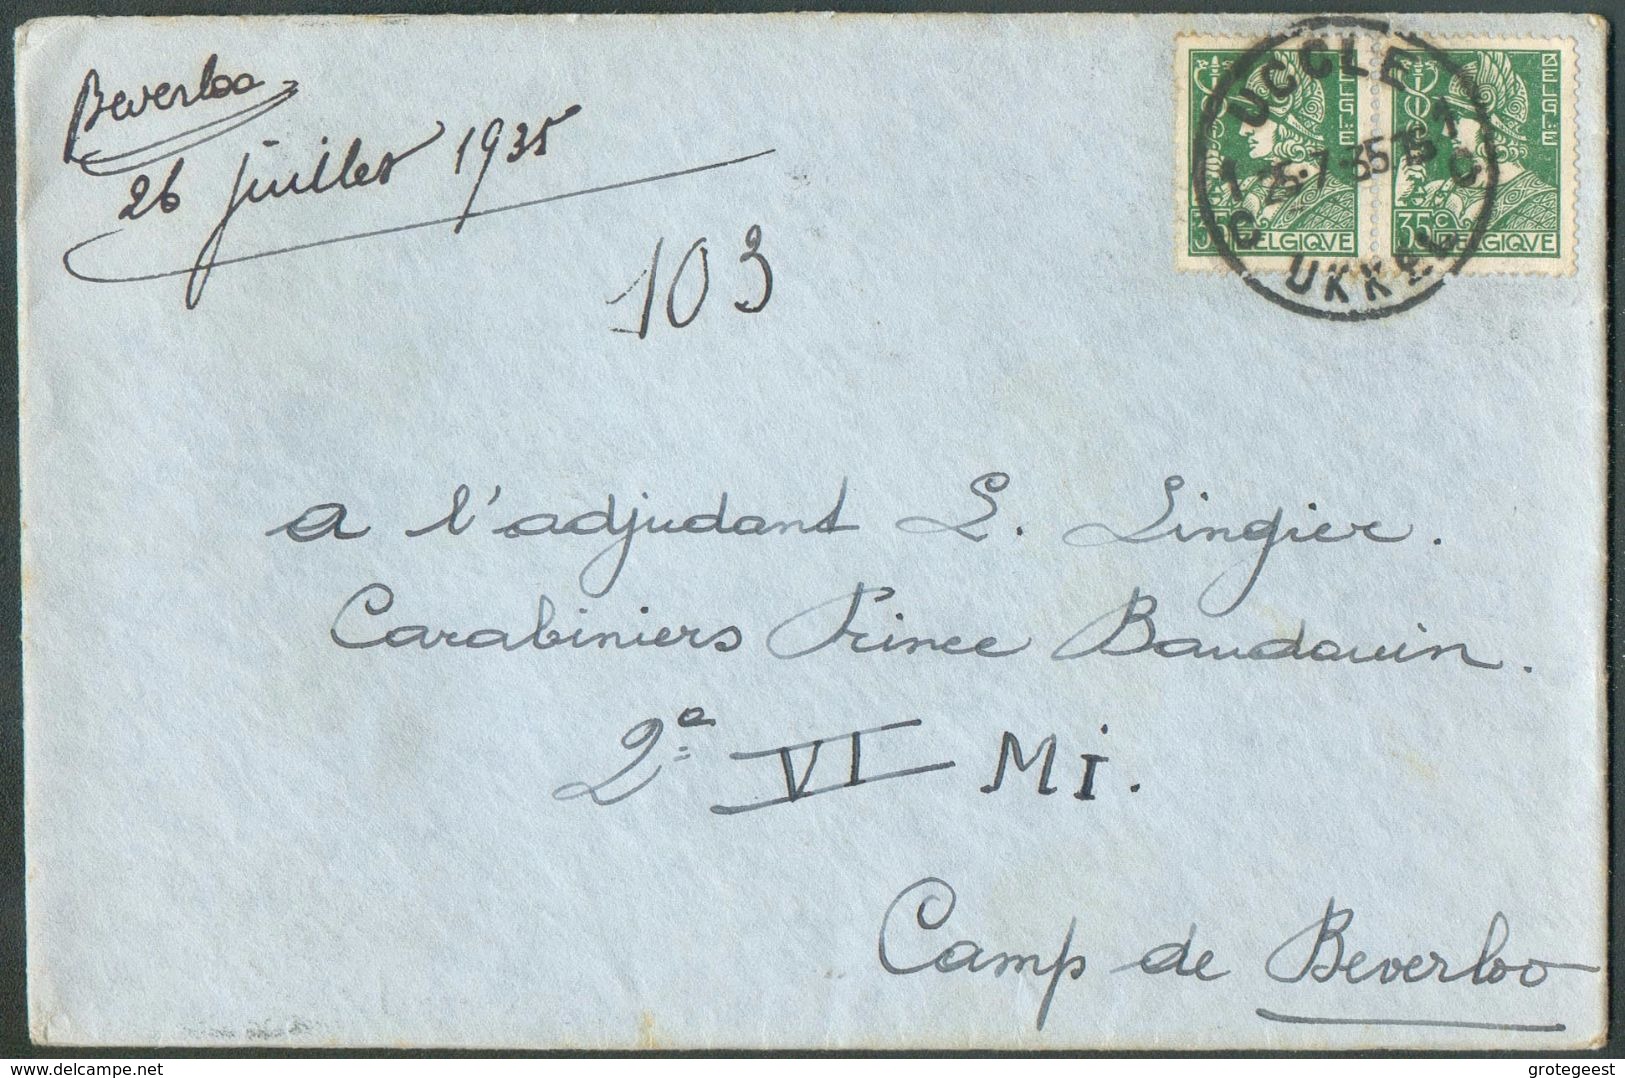 35 Cent. MERCURE (x2)  Obl. Sc DeUCCLE  Sur Lettre Du 25-7-1935 Vers Adjudant Lingier, Carabiniers Prince Baudouin 2è Au - 1932 Ceres And Mercurius